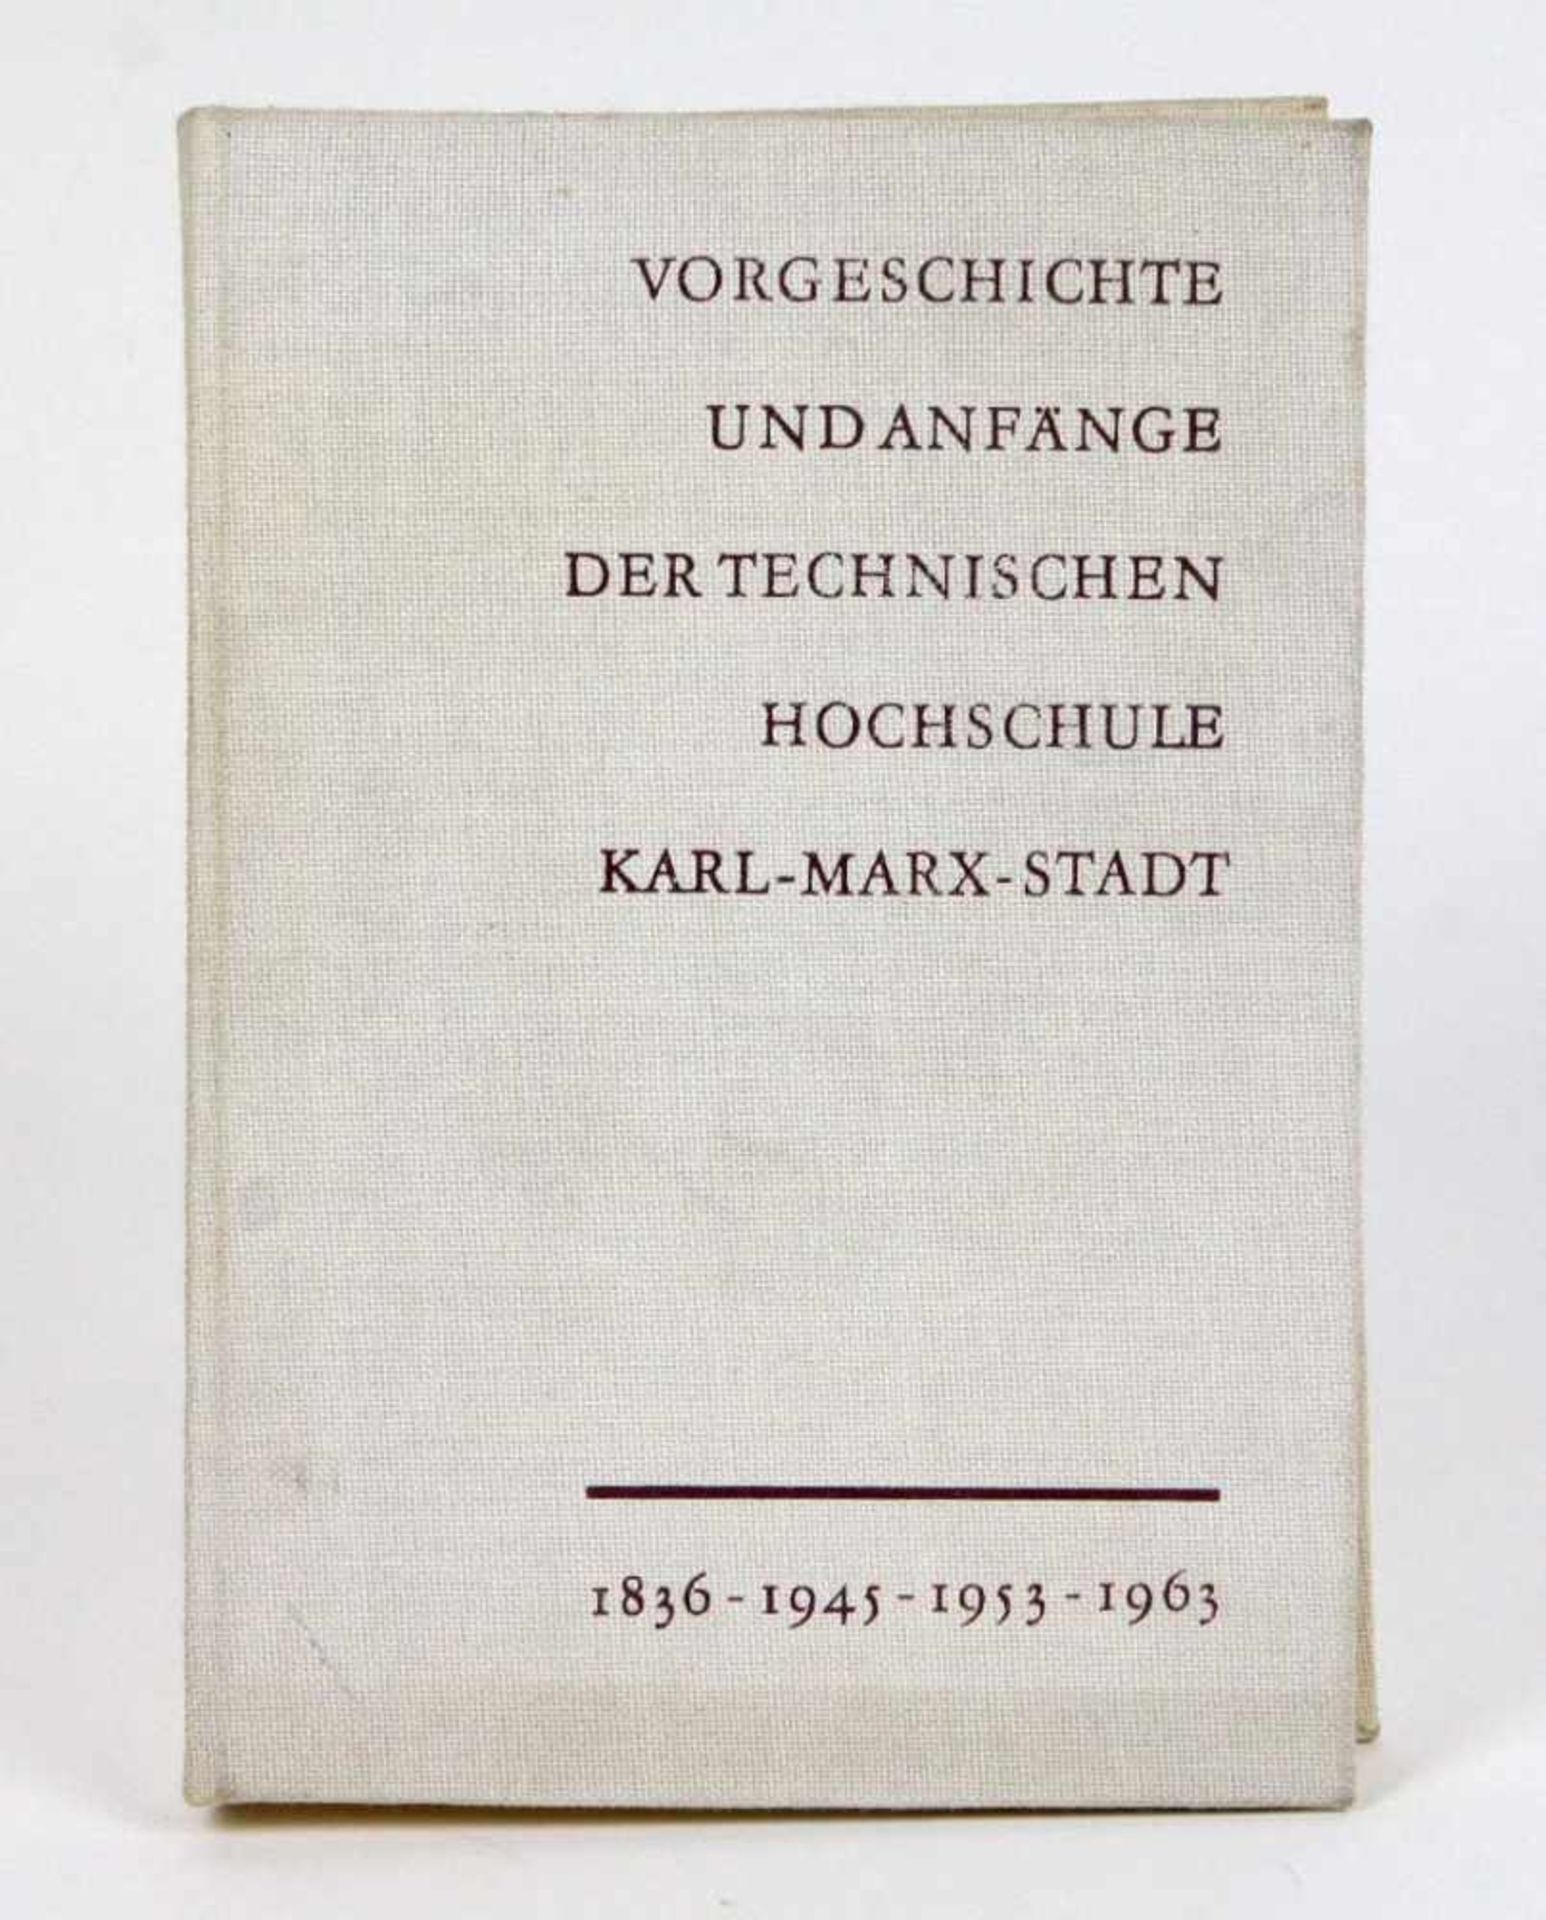 TU Chemnitz 1836-1963*Vorgeschichte und Anfänge der Technischen Hochschule Karl-Marx-Stadt* im